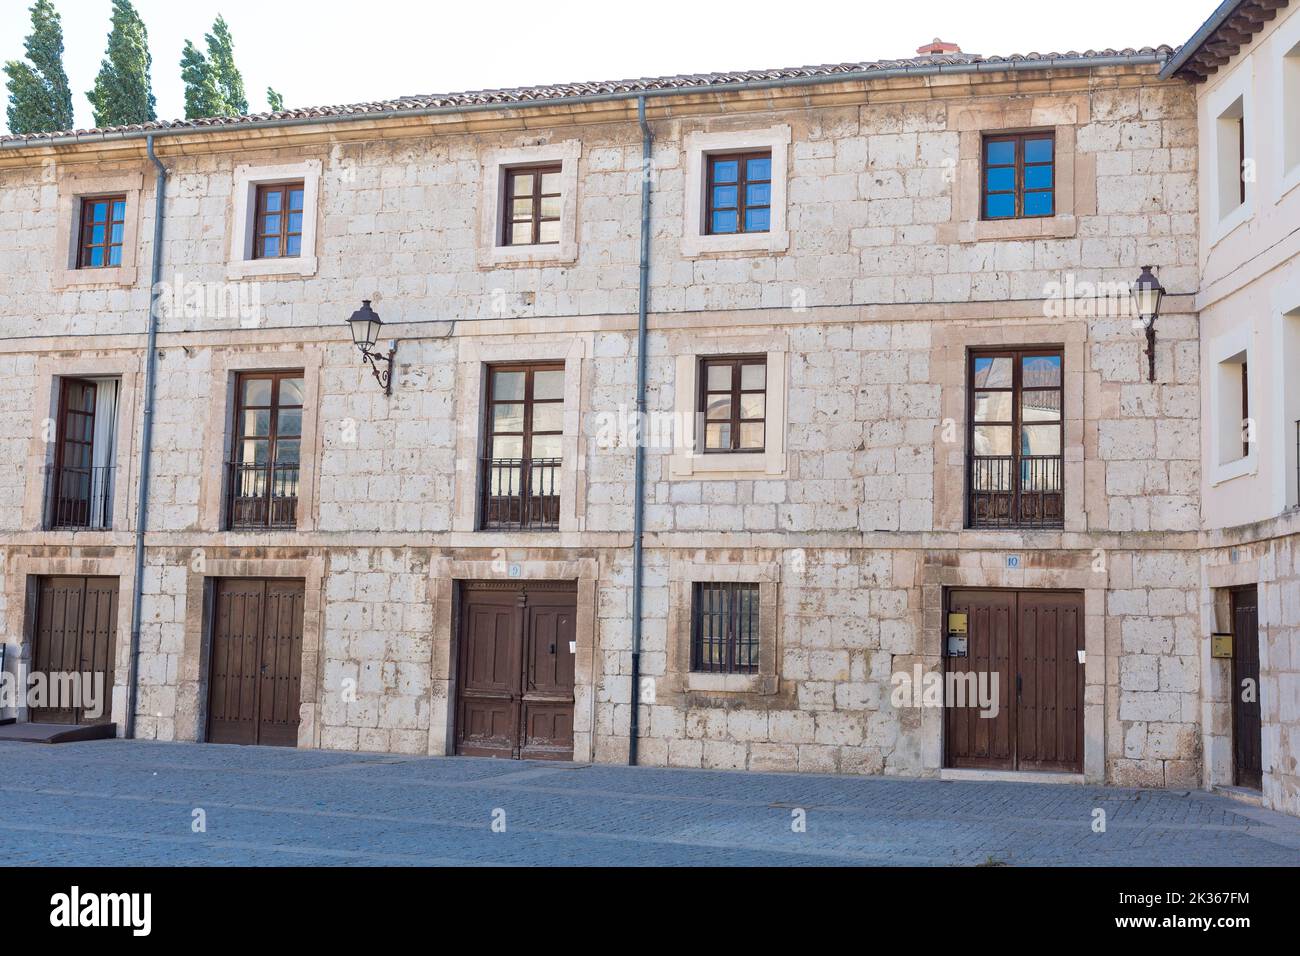 Las Huelgas, Burgos, Spain, a group of medieval buildings. Stock Photo